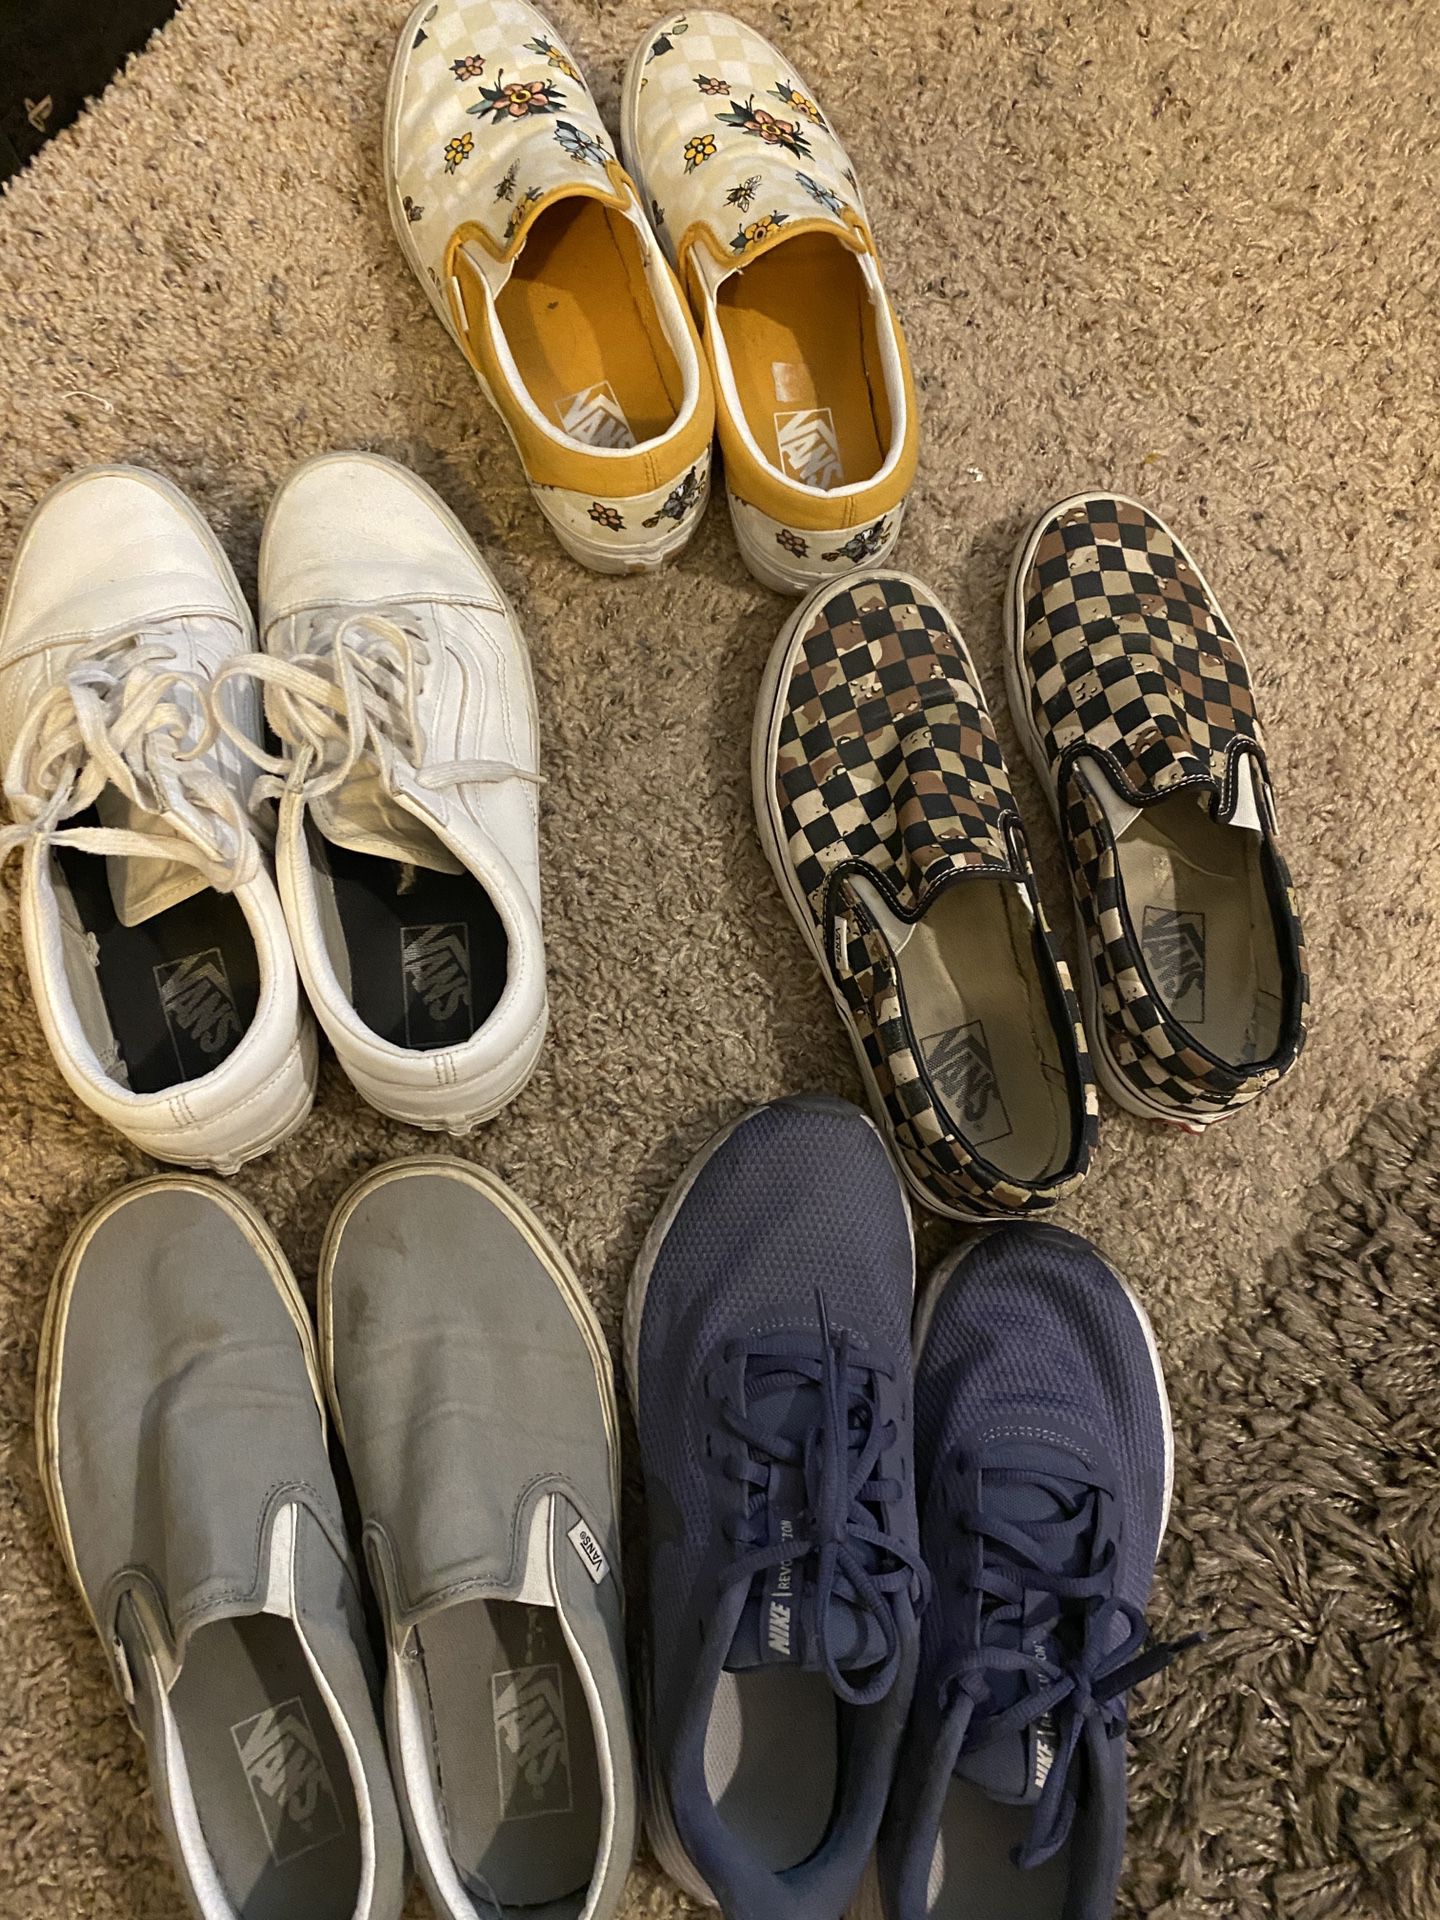 Used Women's 9-9.5 Shoes (VANS, NIKE)